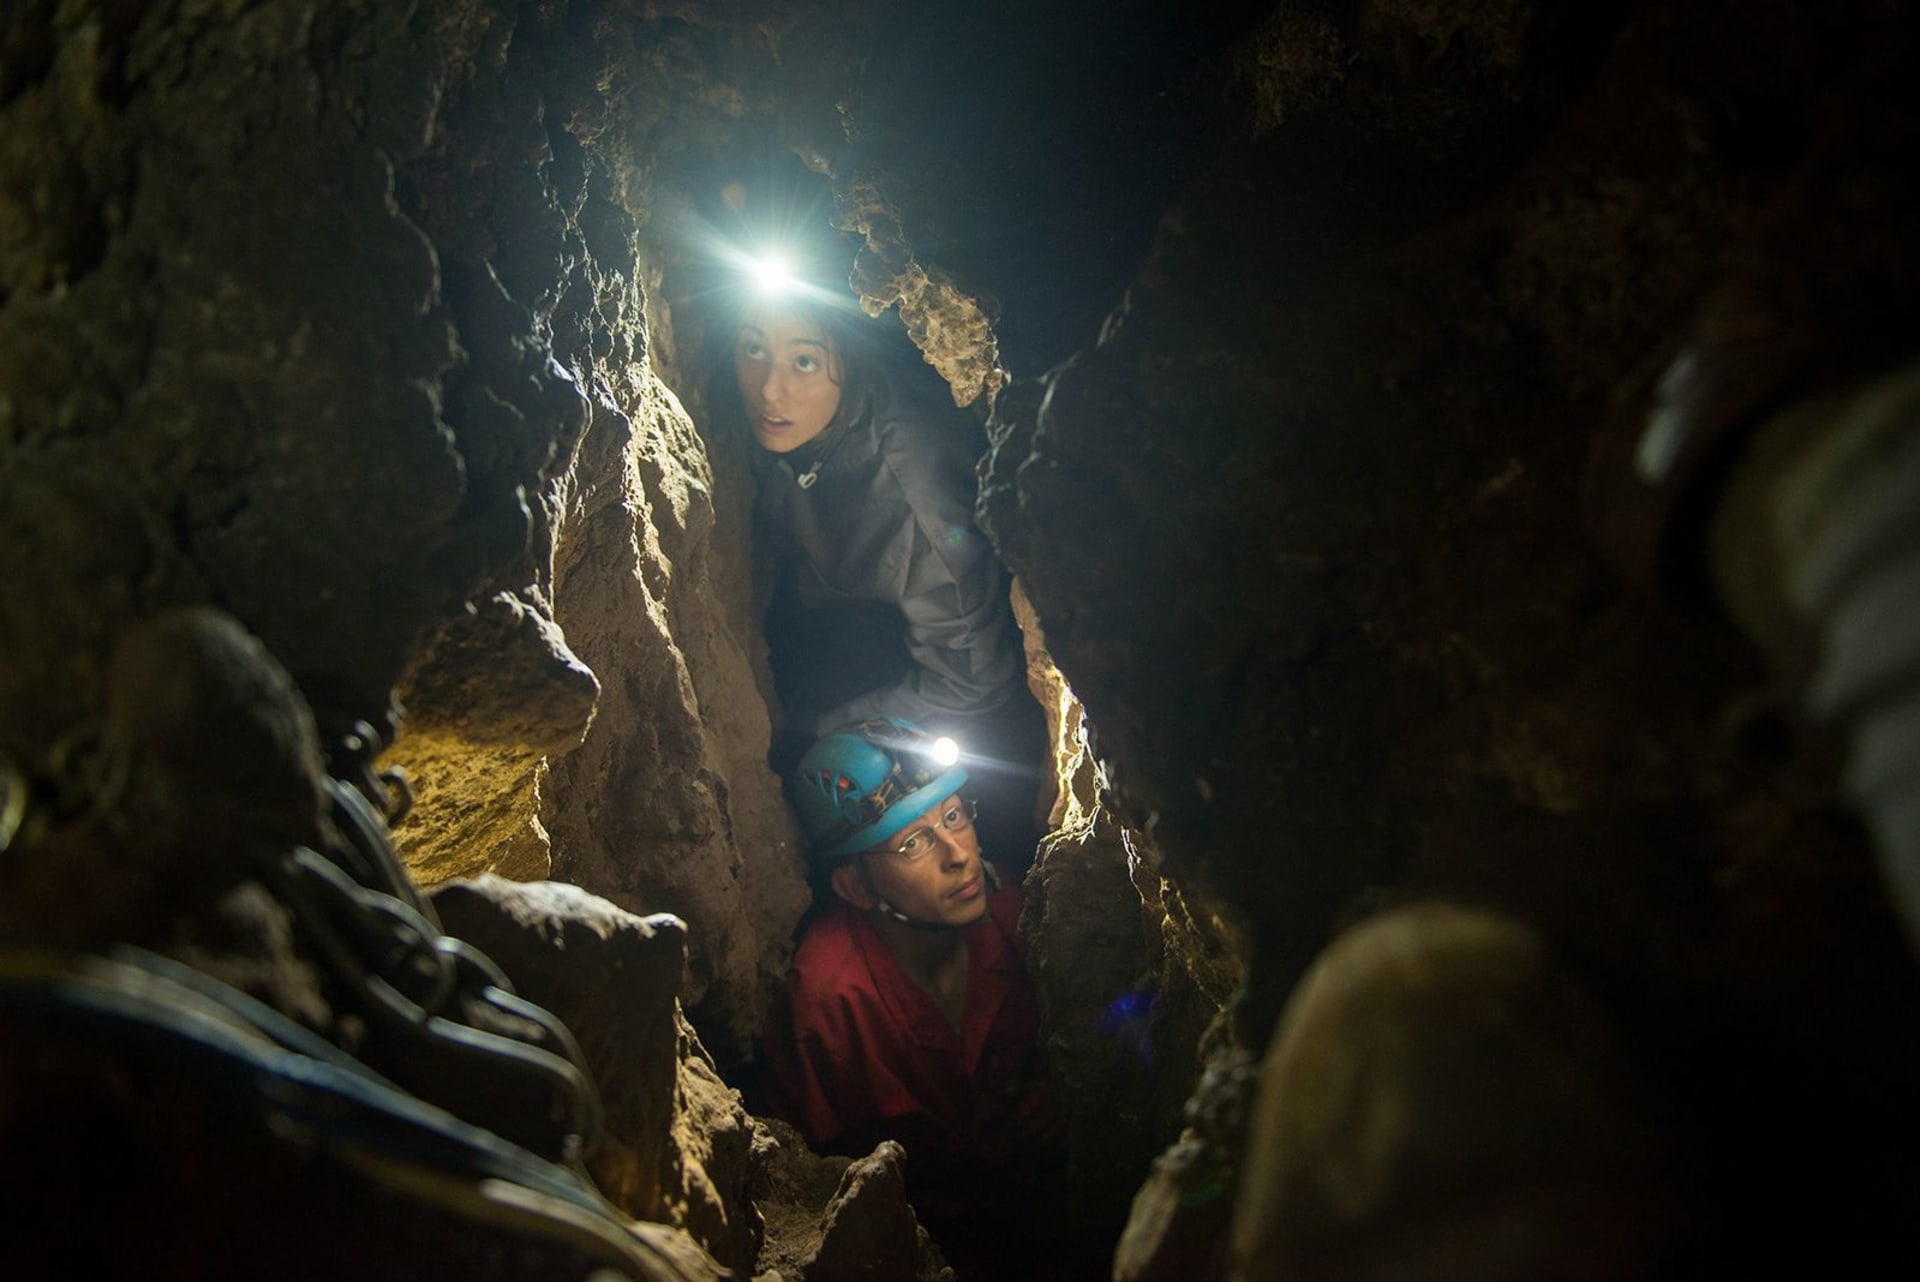 Dcera Dr. Lee Bergera Megan (nahoře) a člen podzemního průzkumného týmu Rick Hunter proplouvají úzkými skluzy vedoucími do jeskyně Dinaledi Chamber of the Rising Star v Jižní Africe.